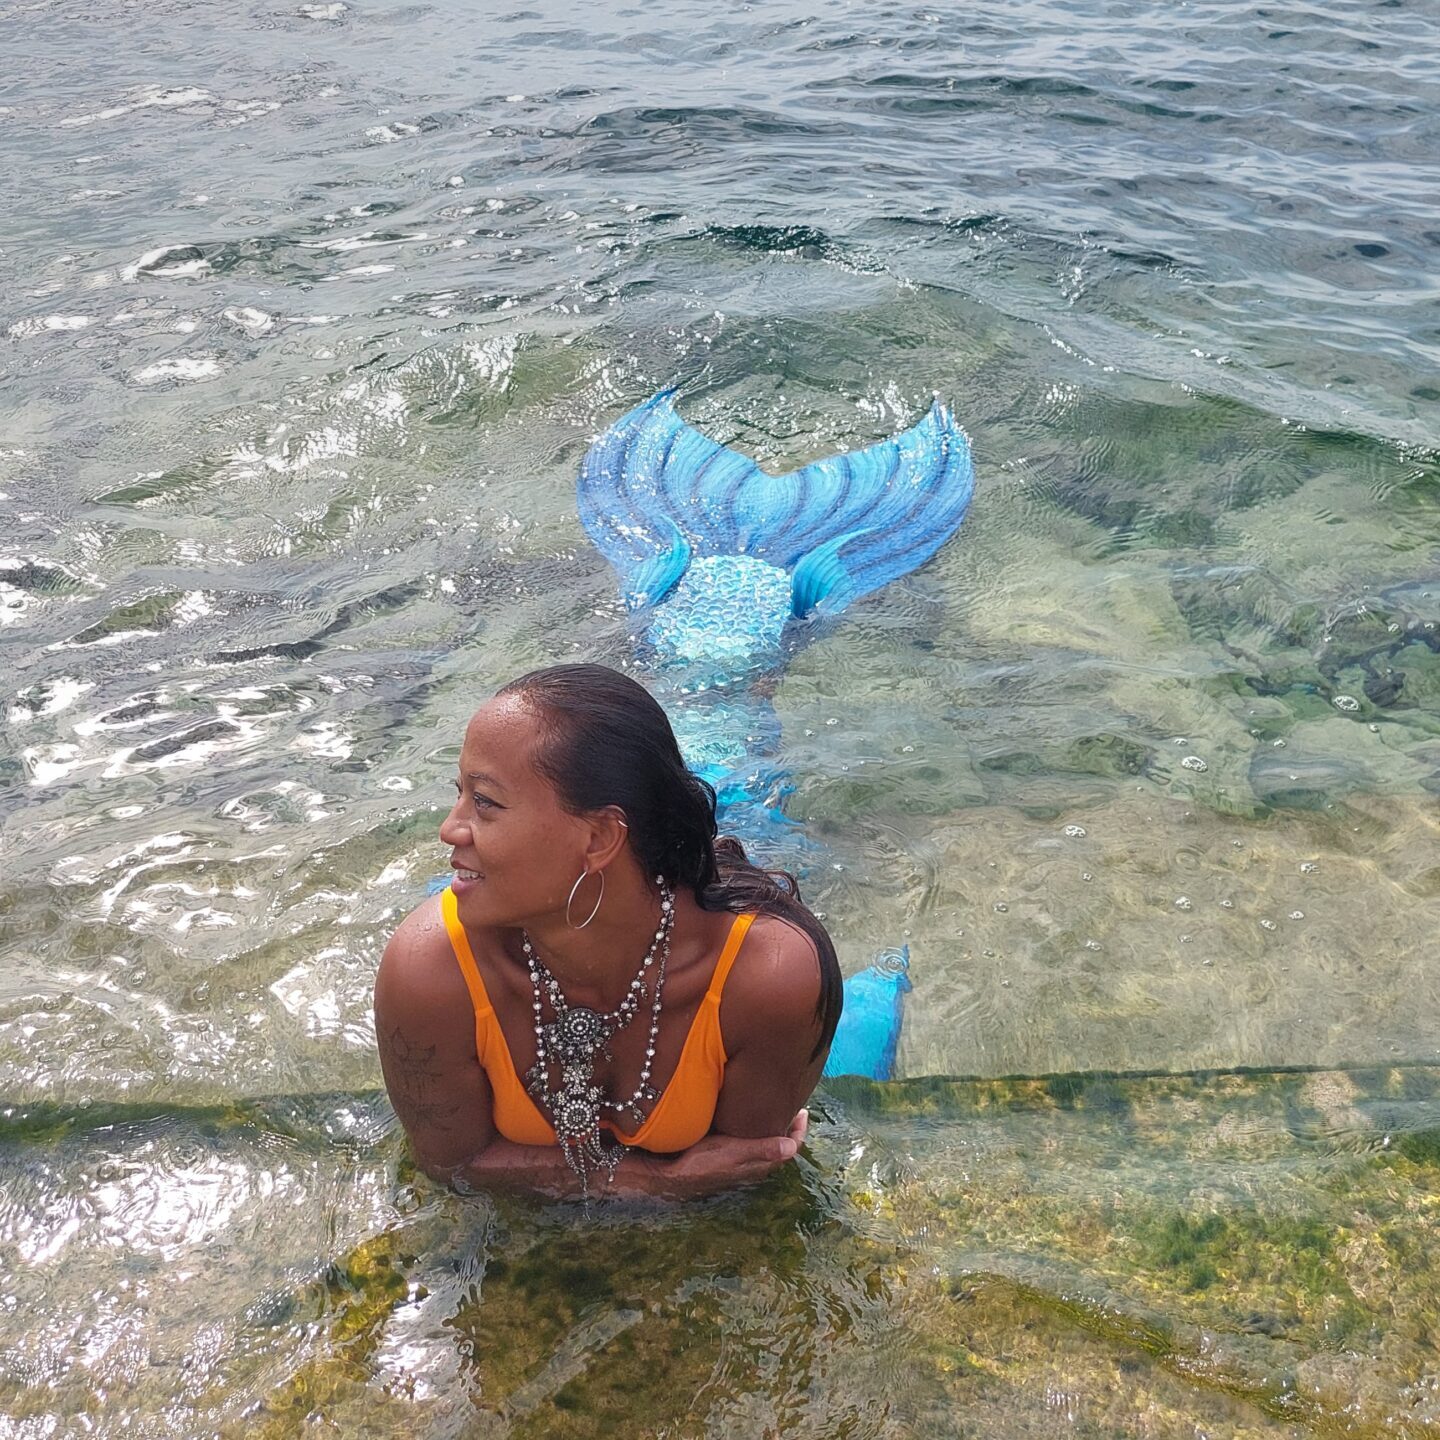 Mermaid in the water